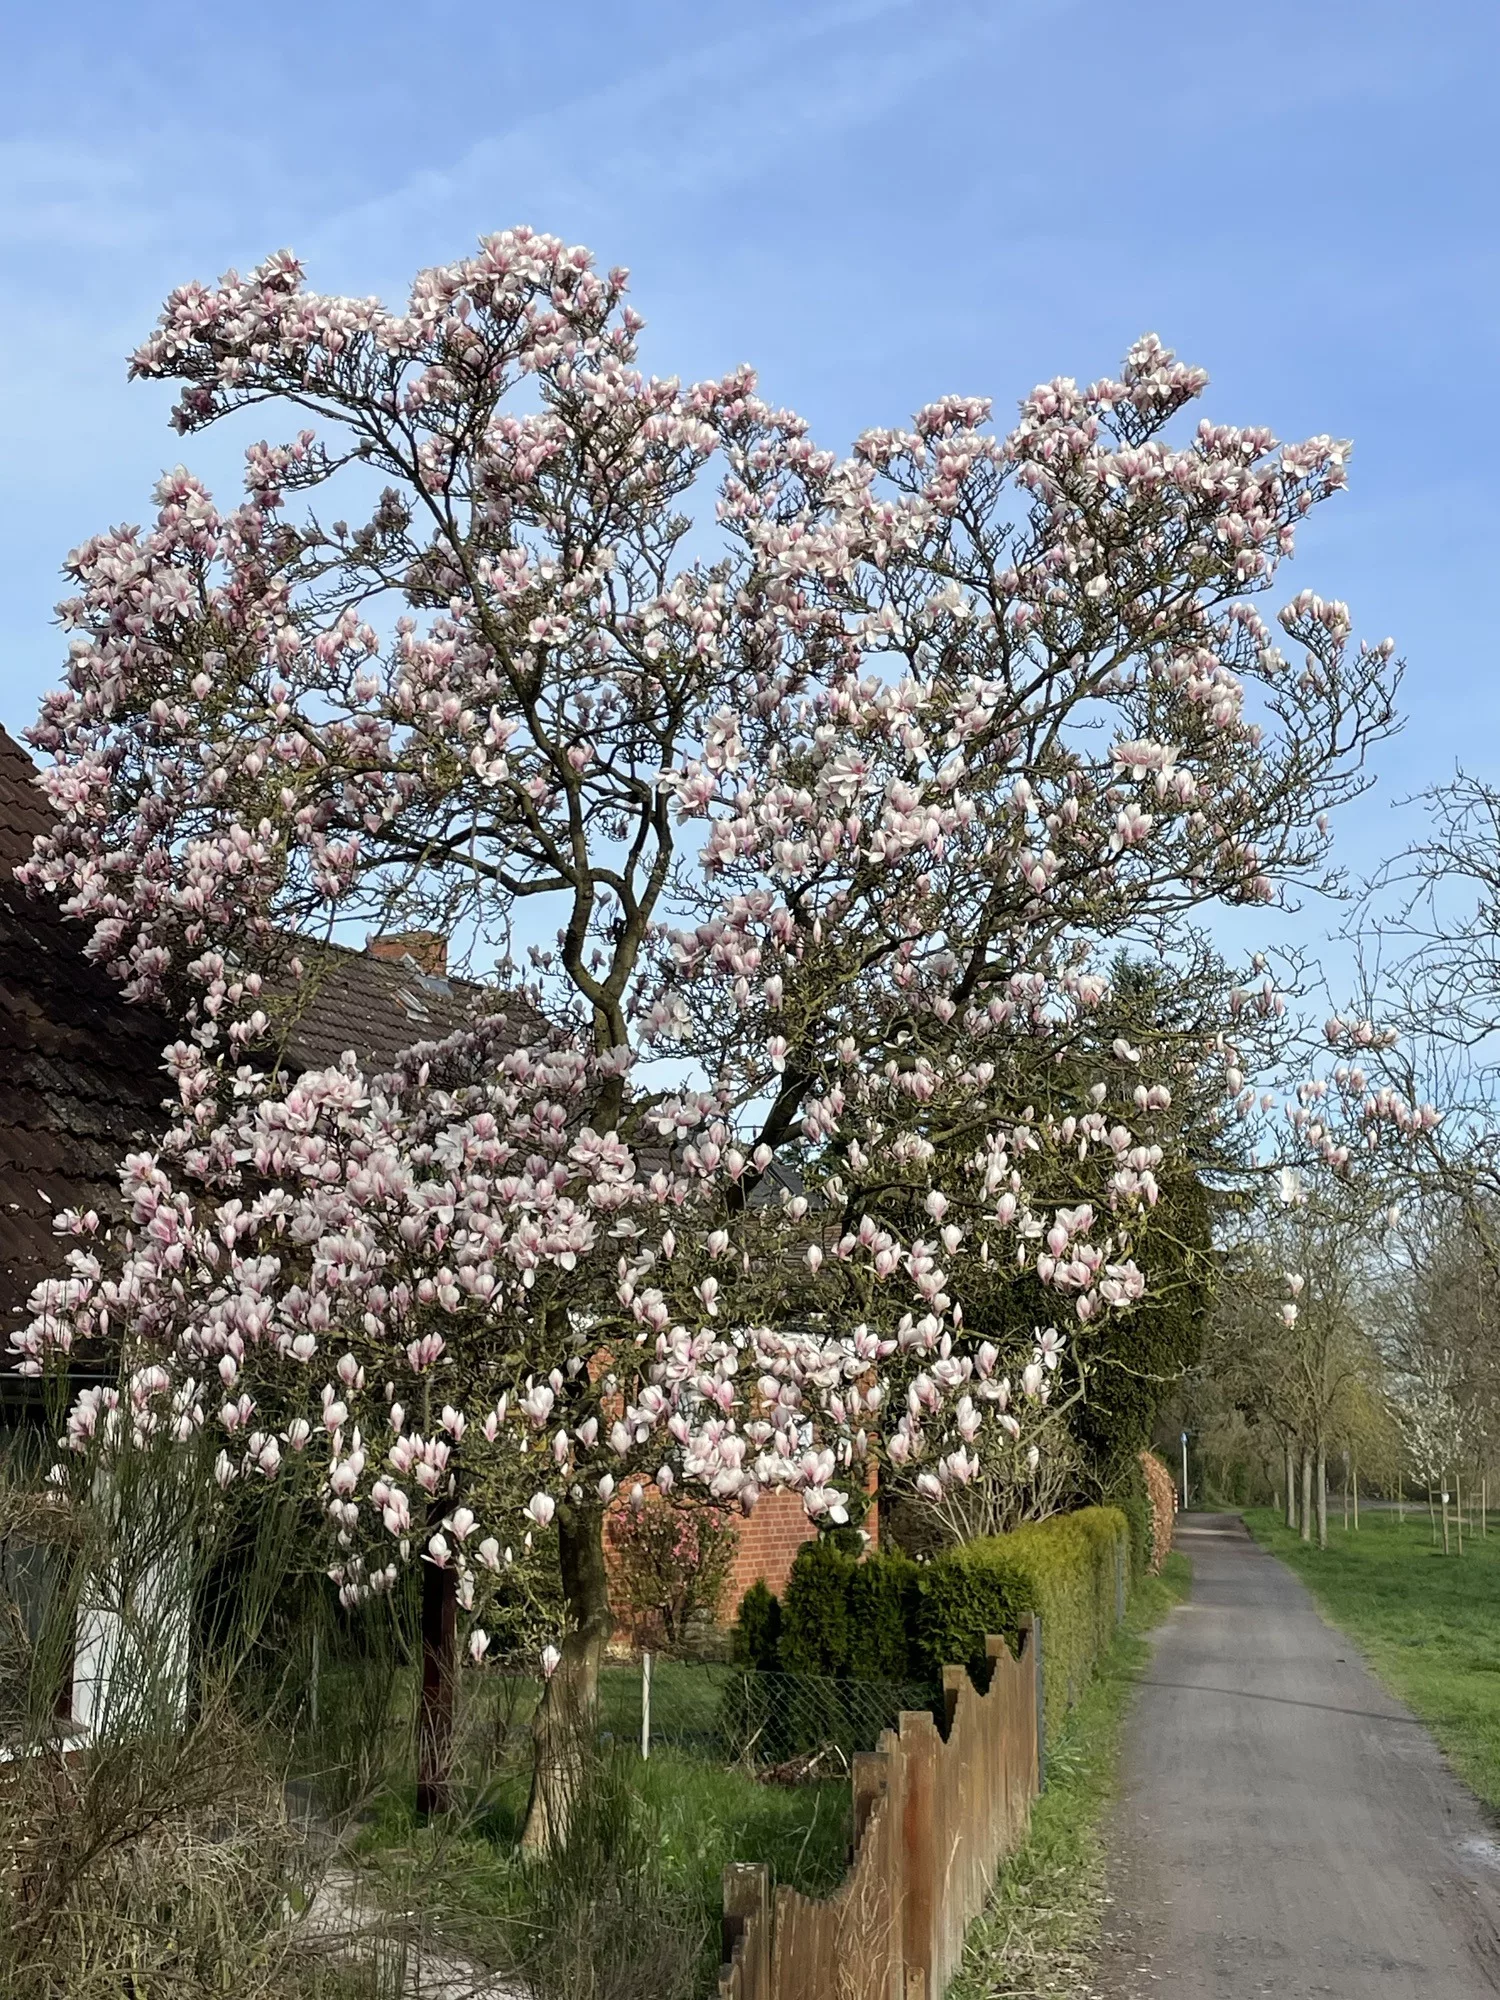 Wei-rosa blühender Tulpenbaum in voller Pracht.